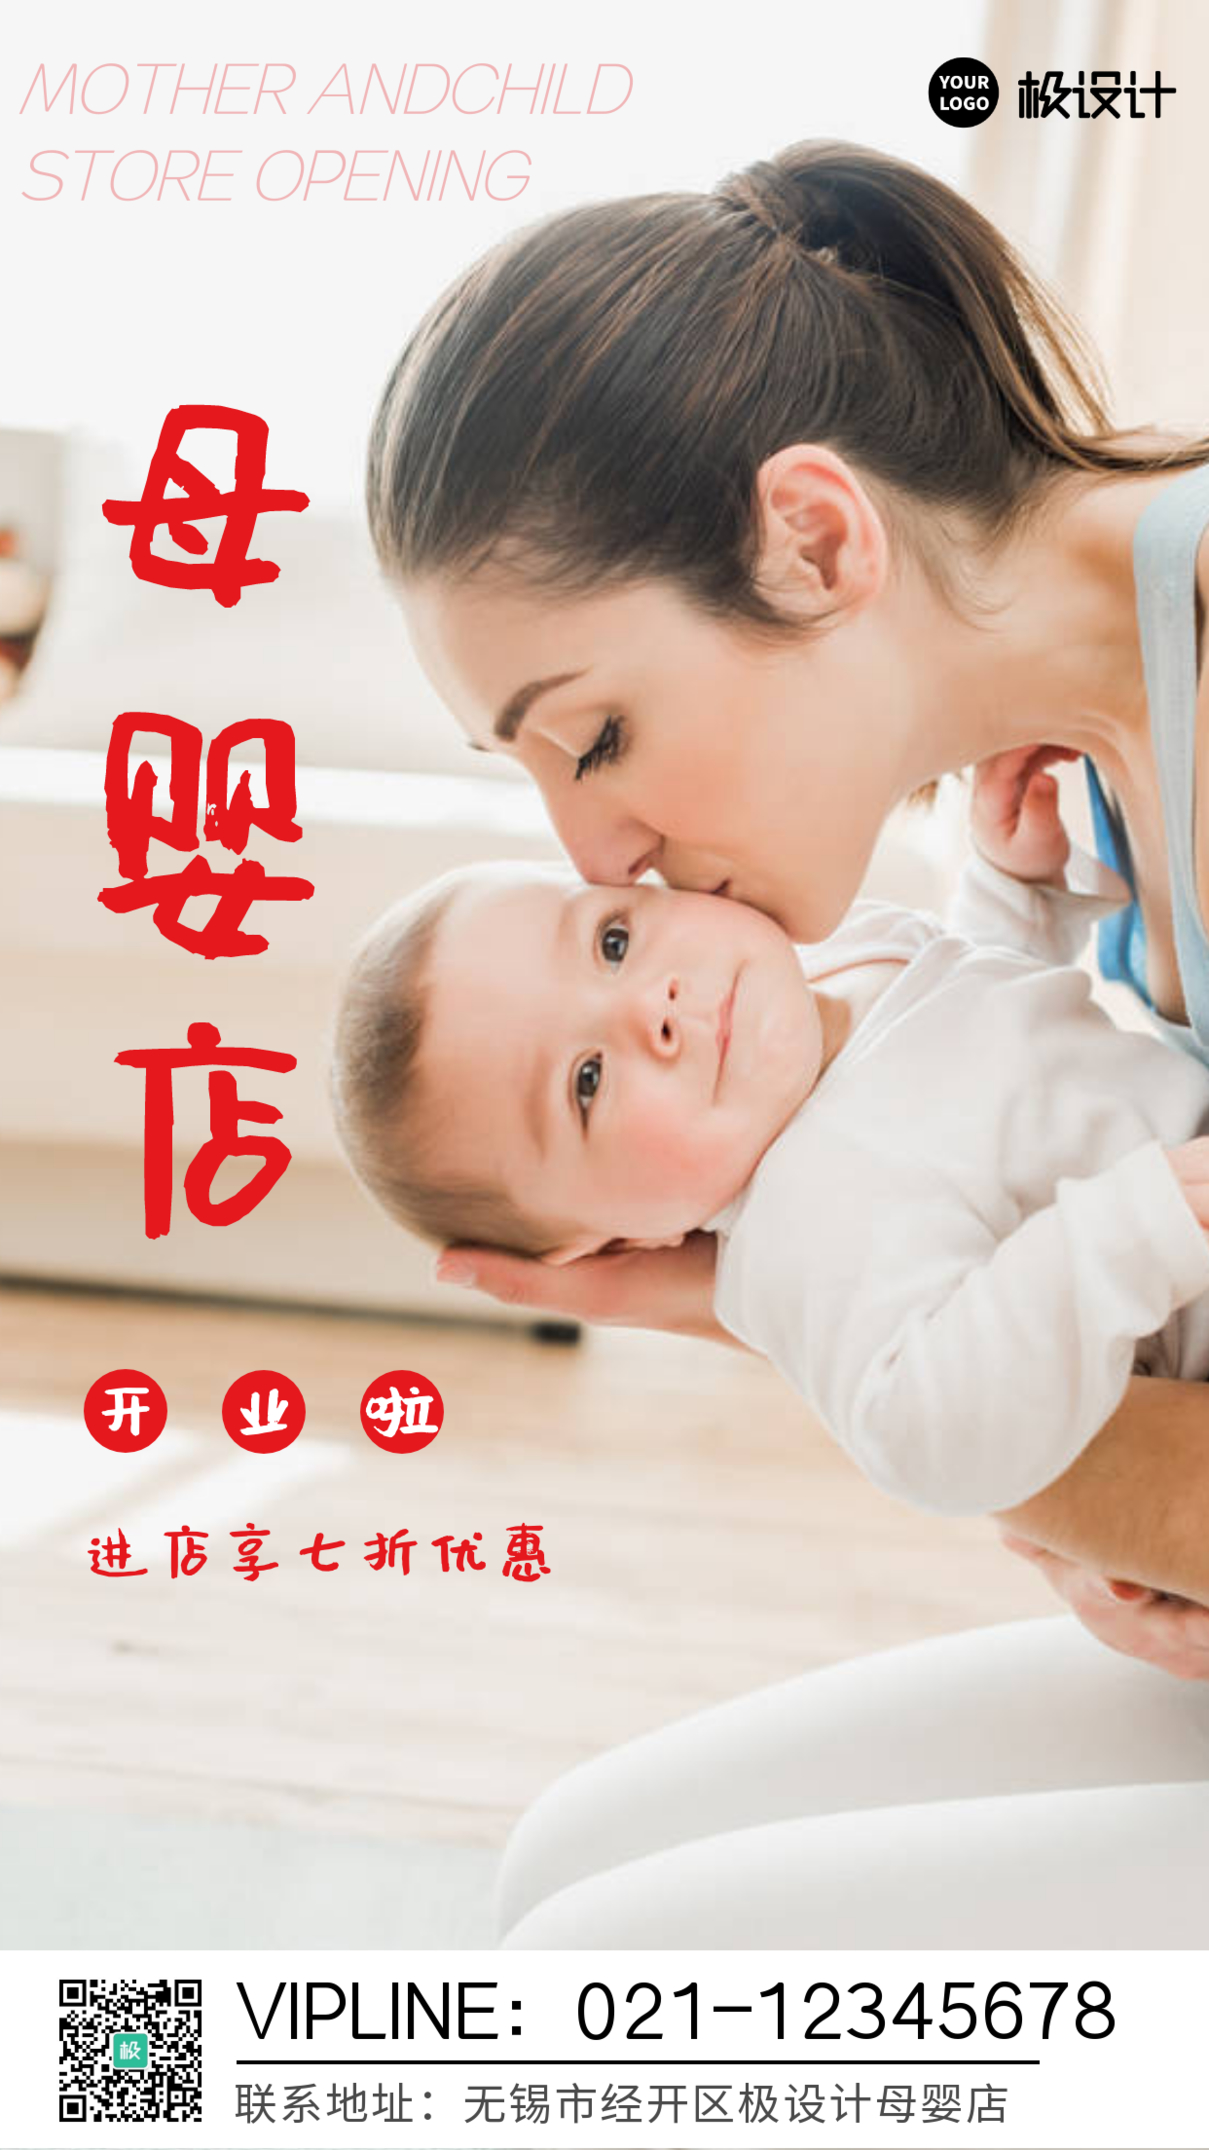 摄影风简约母婴店开业宣传手机营销海报